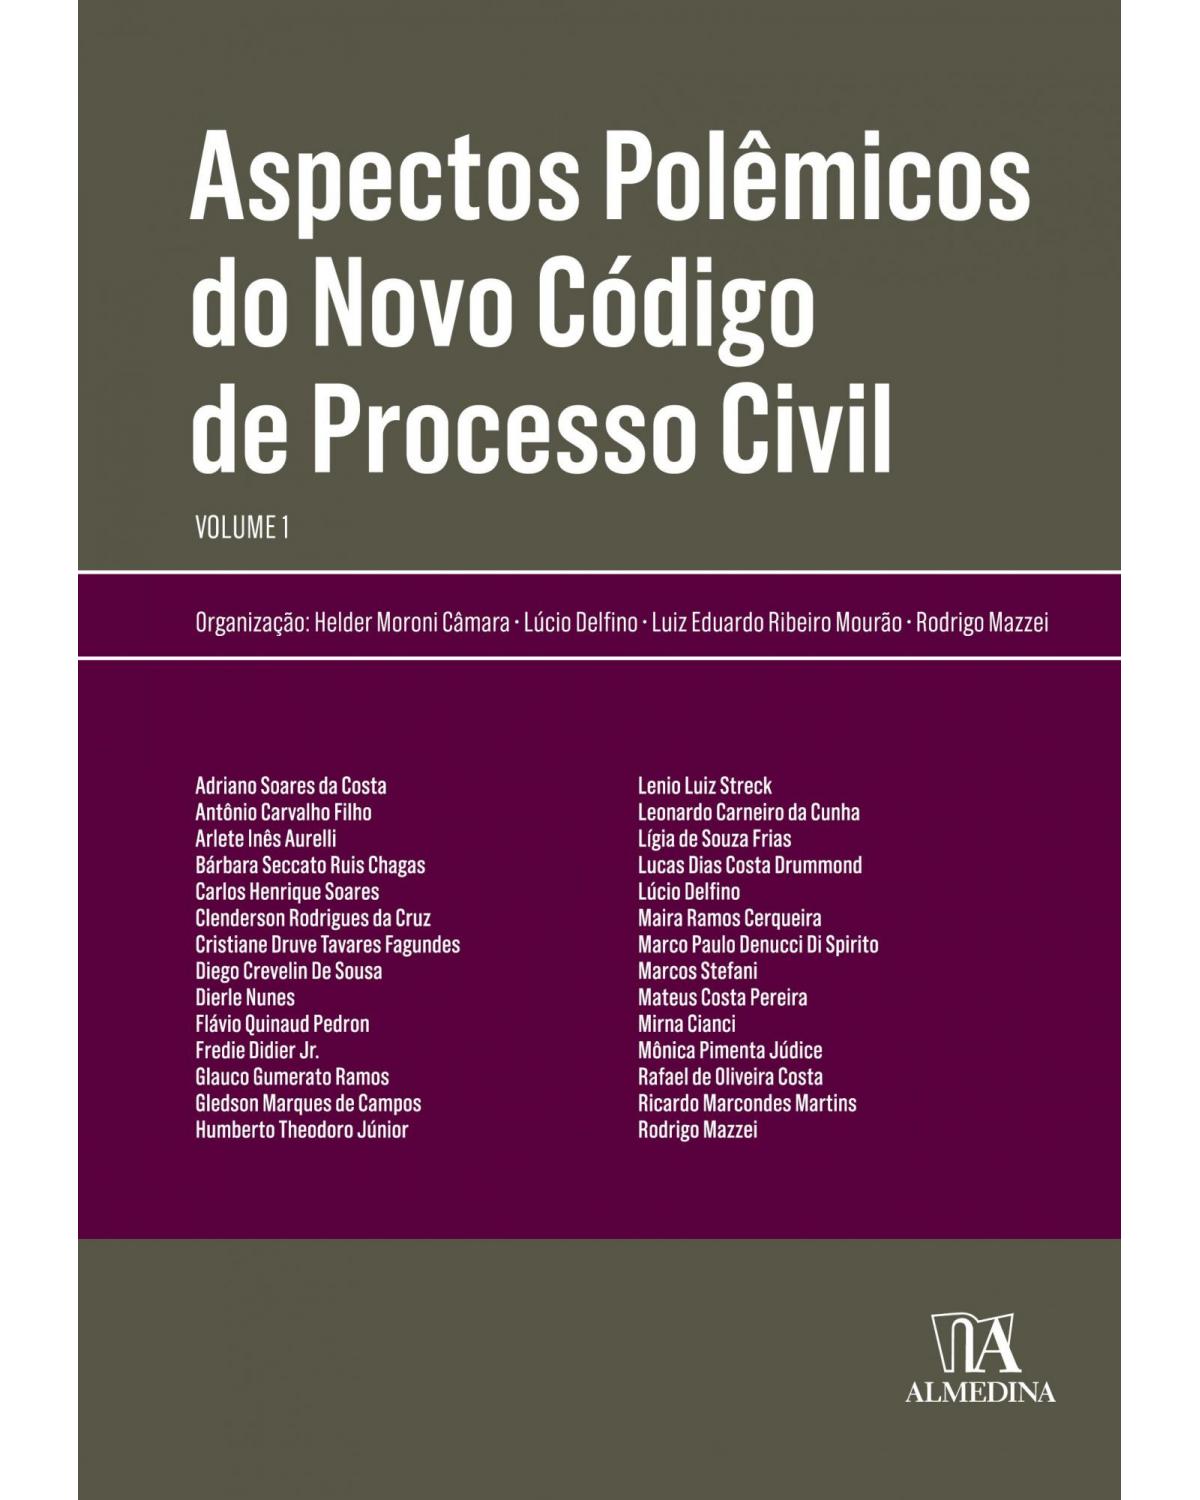 Aspectos polêmicos do novo código de processo civil - Volume 1:  - 1ª Edição | 2018